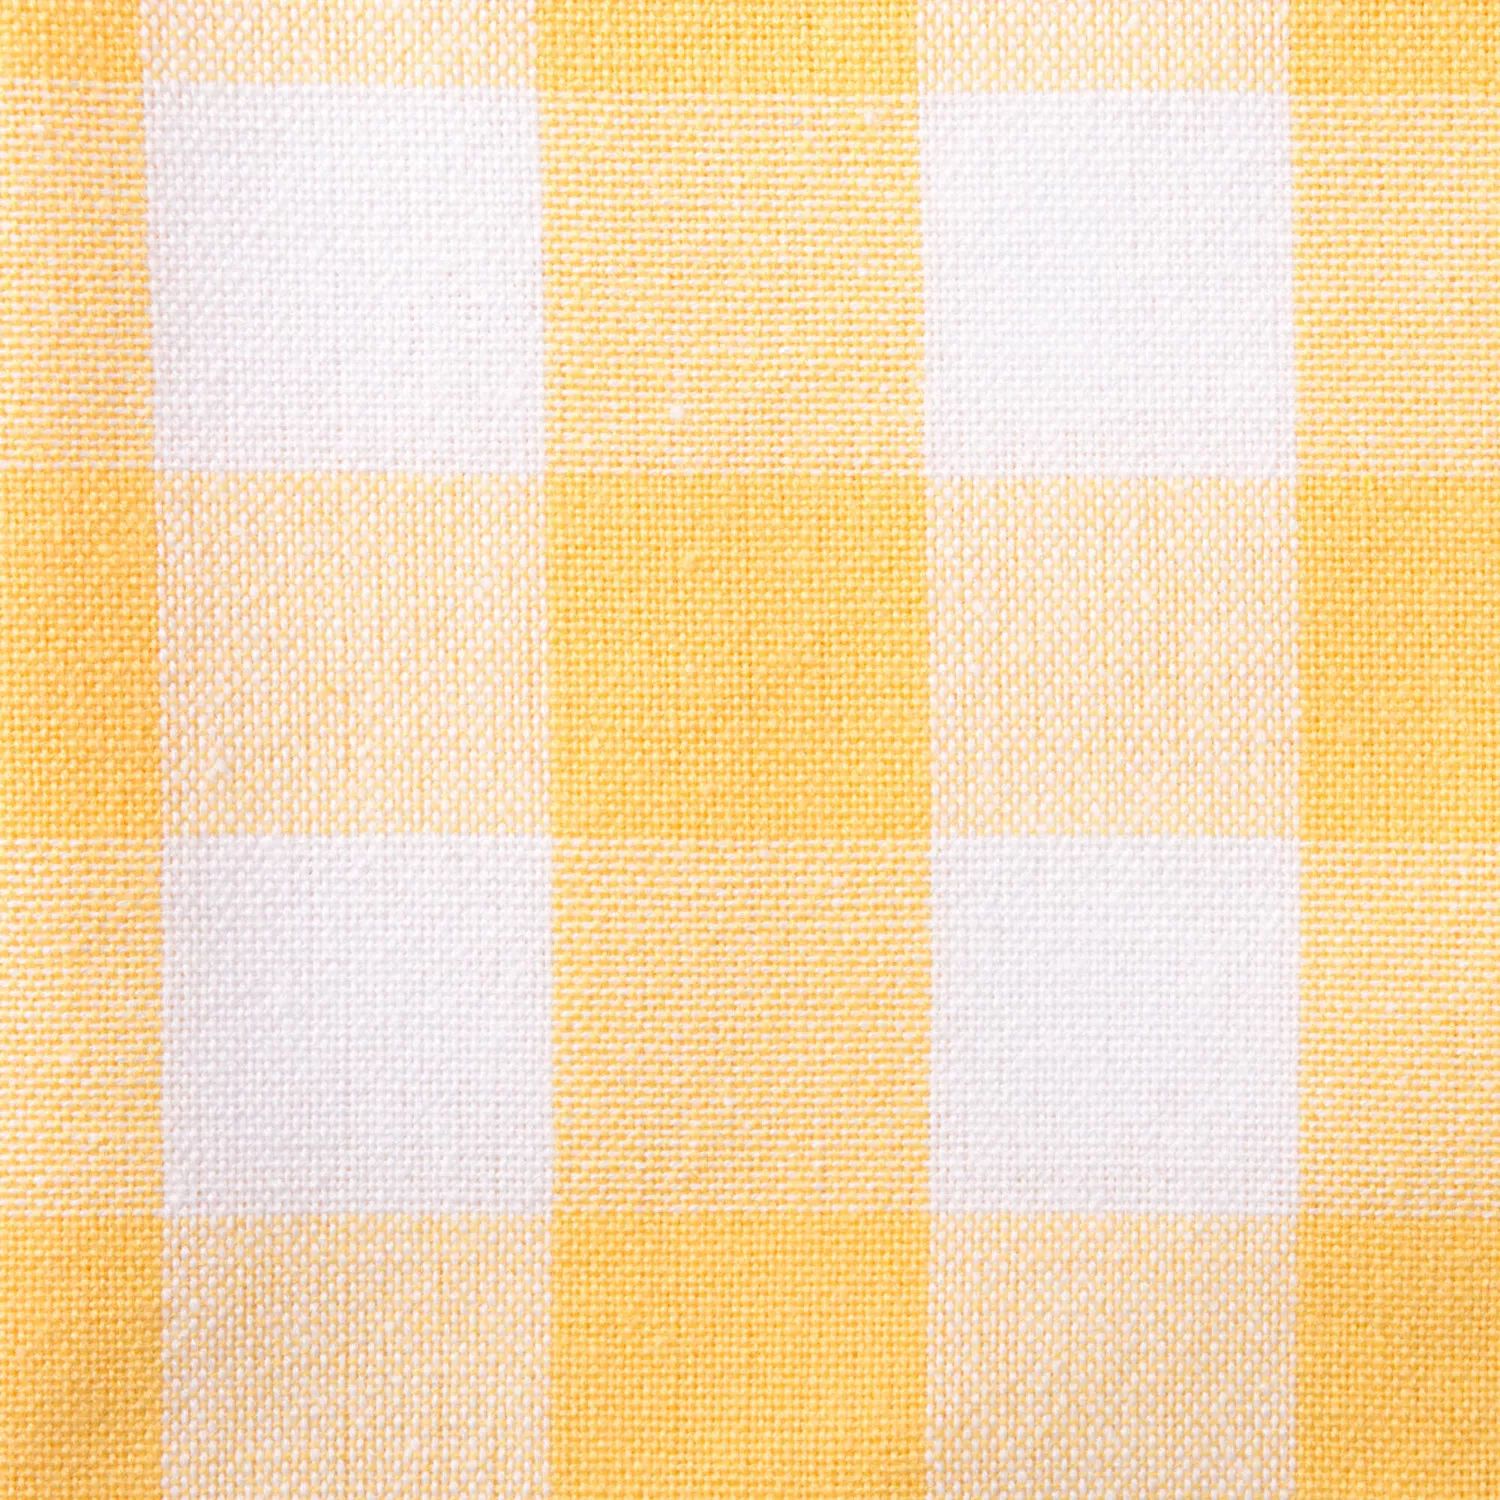 52-дюймовая квадратная скатерть в желтую и белую клетку 52 дюймовая скатерть в серо белую клетку